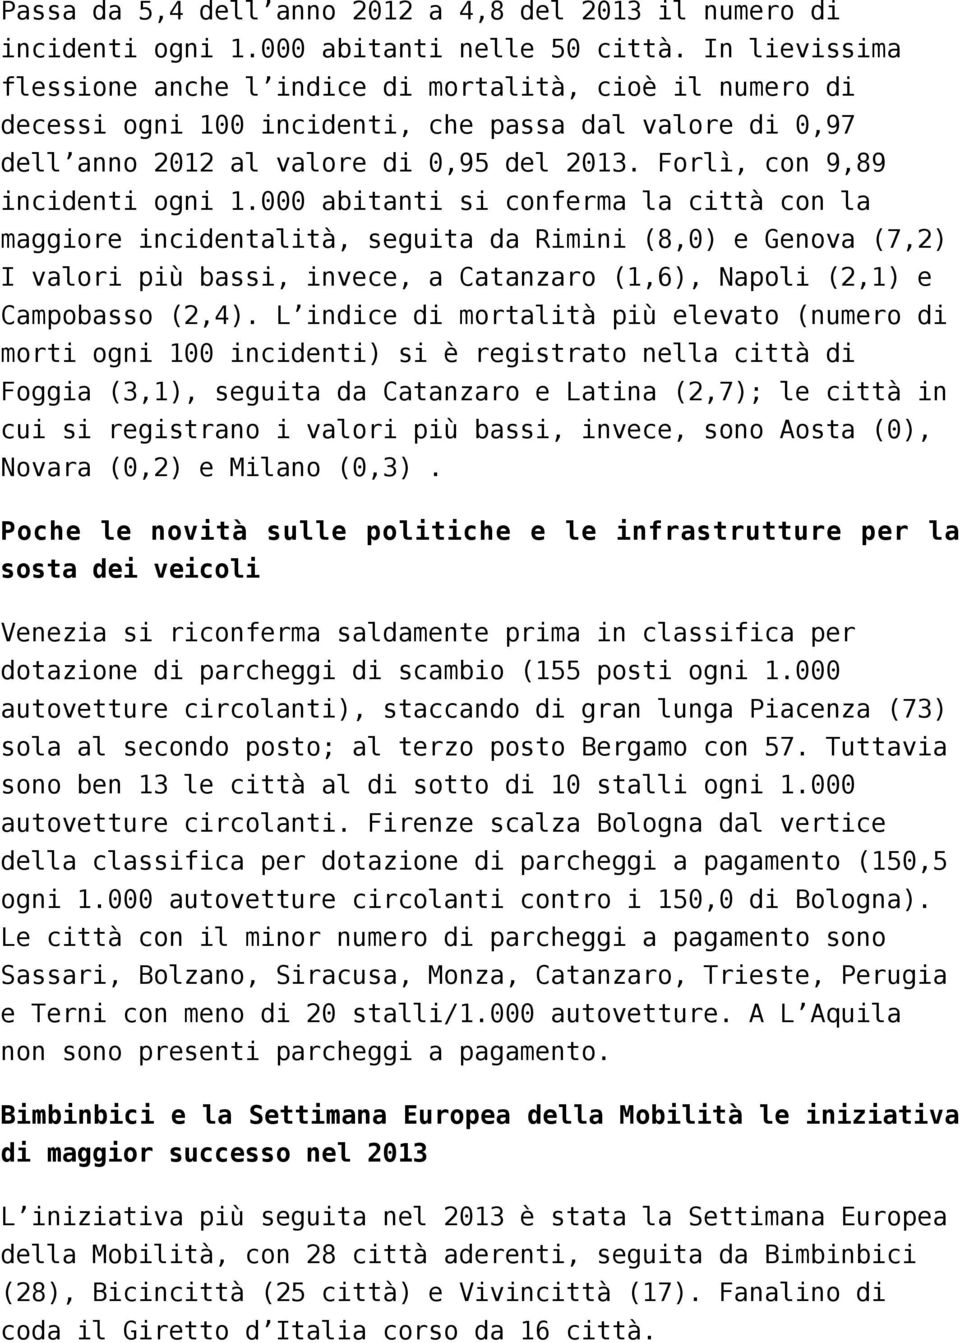 Forlì, con 9,89 incidenti ogni 1.